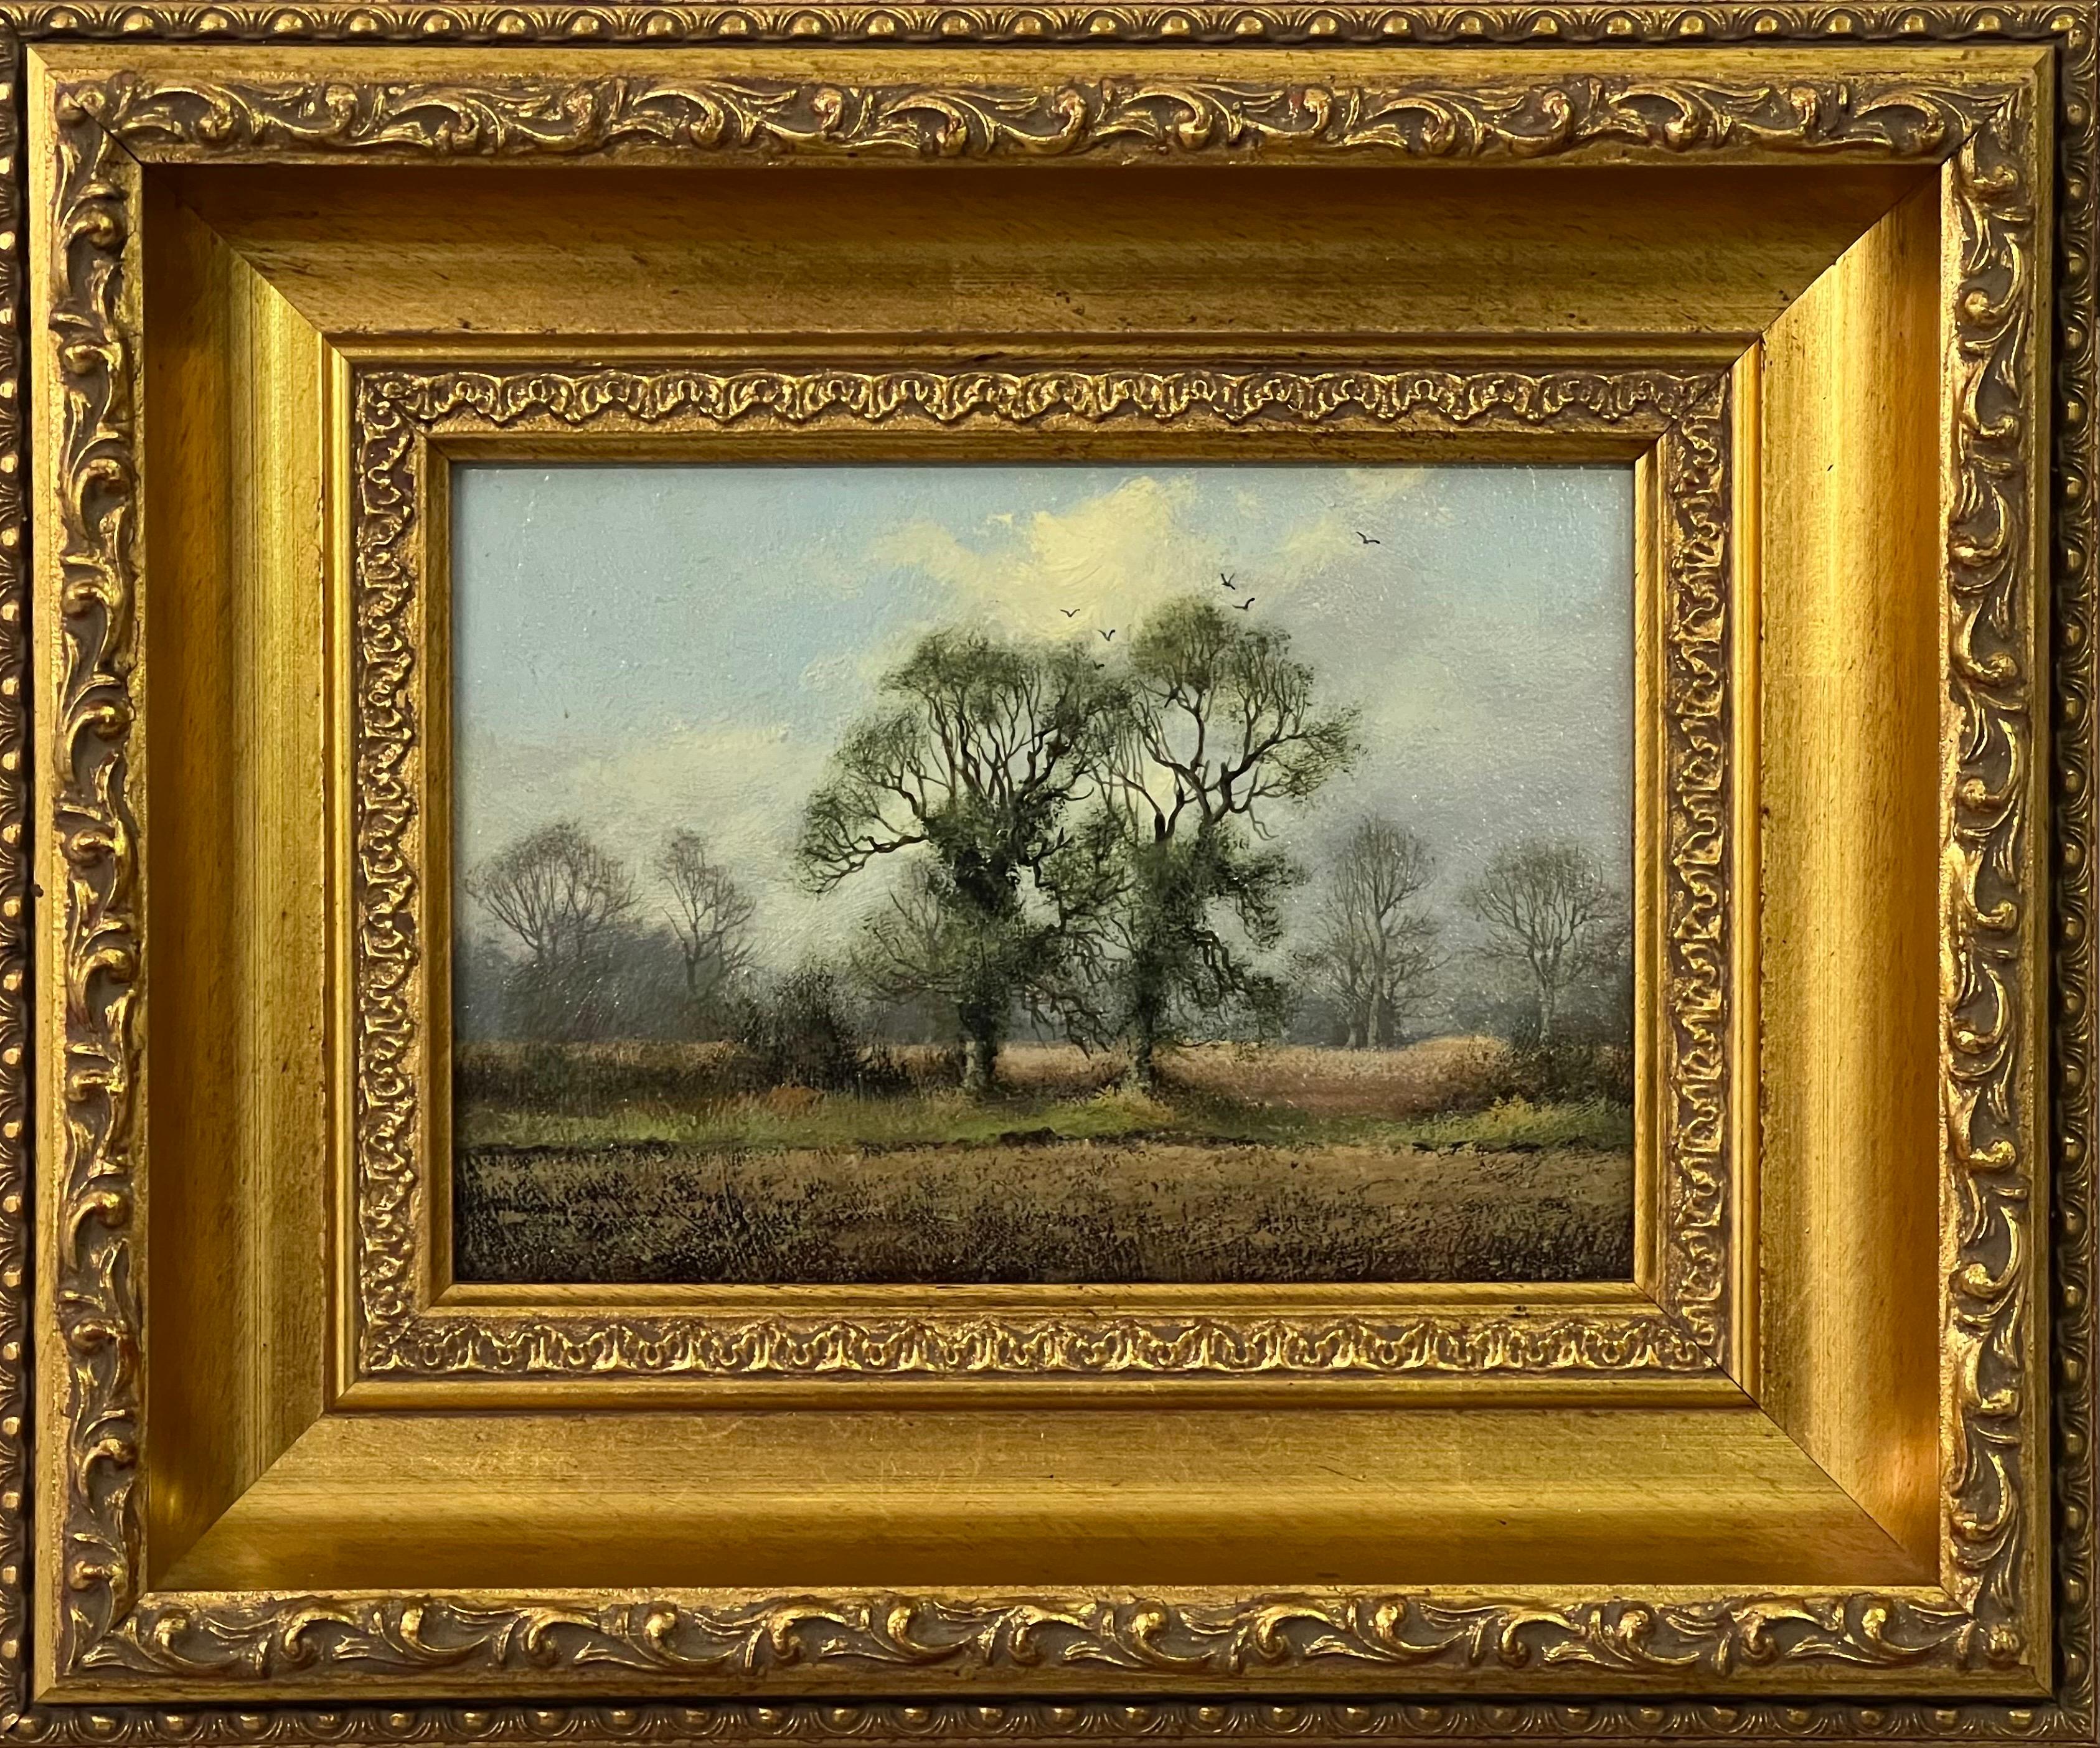 Étude d'arbre de campagne en campagne anglaise par un artiste paysagiste britannique du 20e siècle